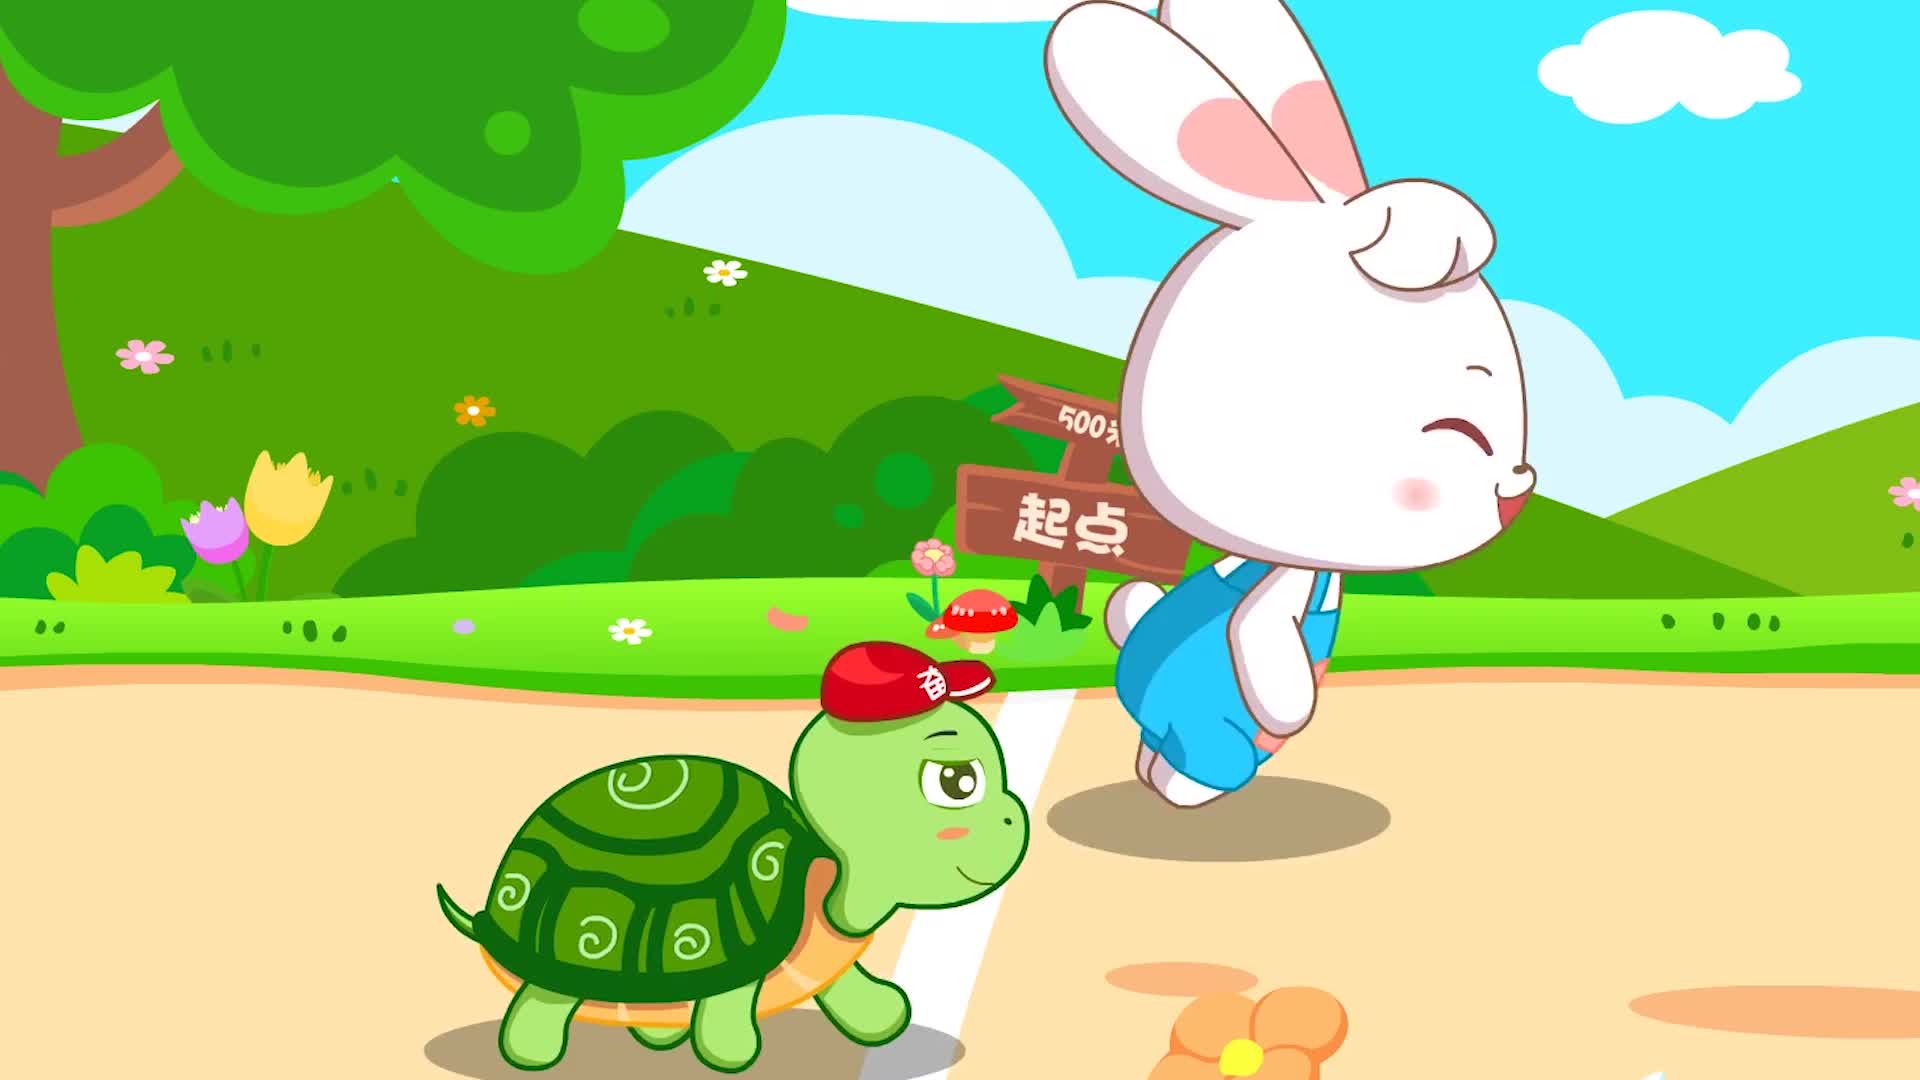 真实的龟兔赛跑,乌龟用事实证明了,兔子当年输得不冤!